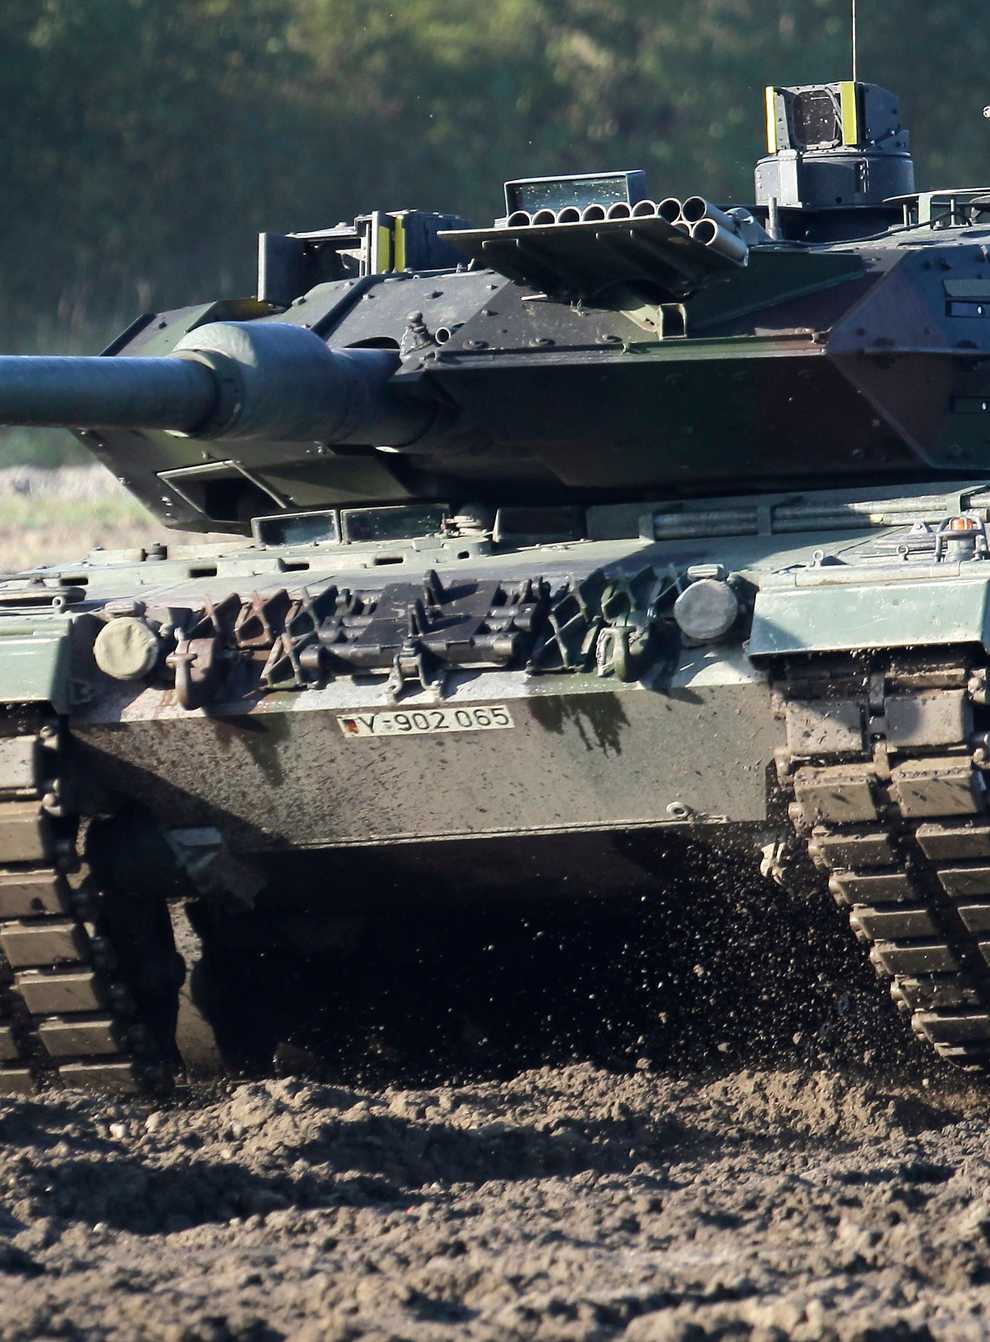 A Leopard 2 tank (AP Photo/Michael Sohn, File)